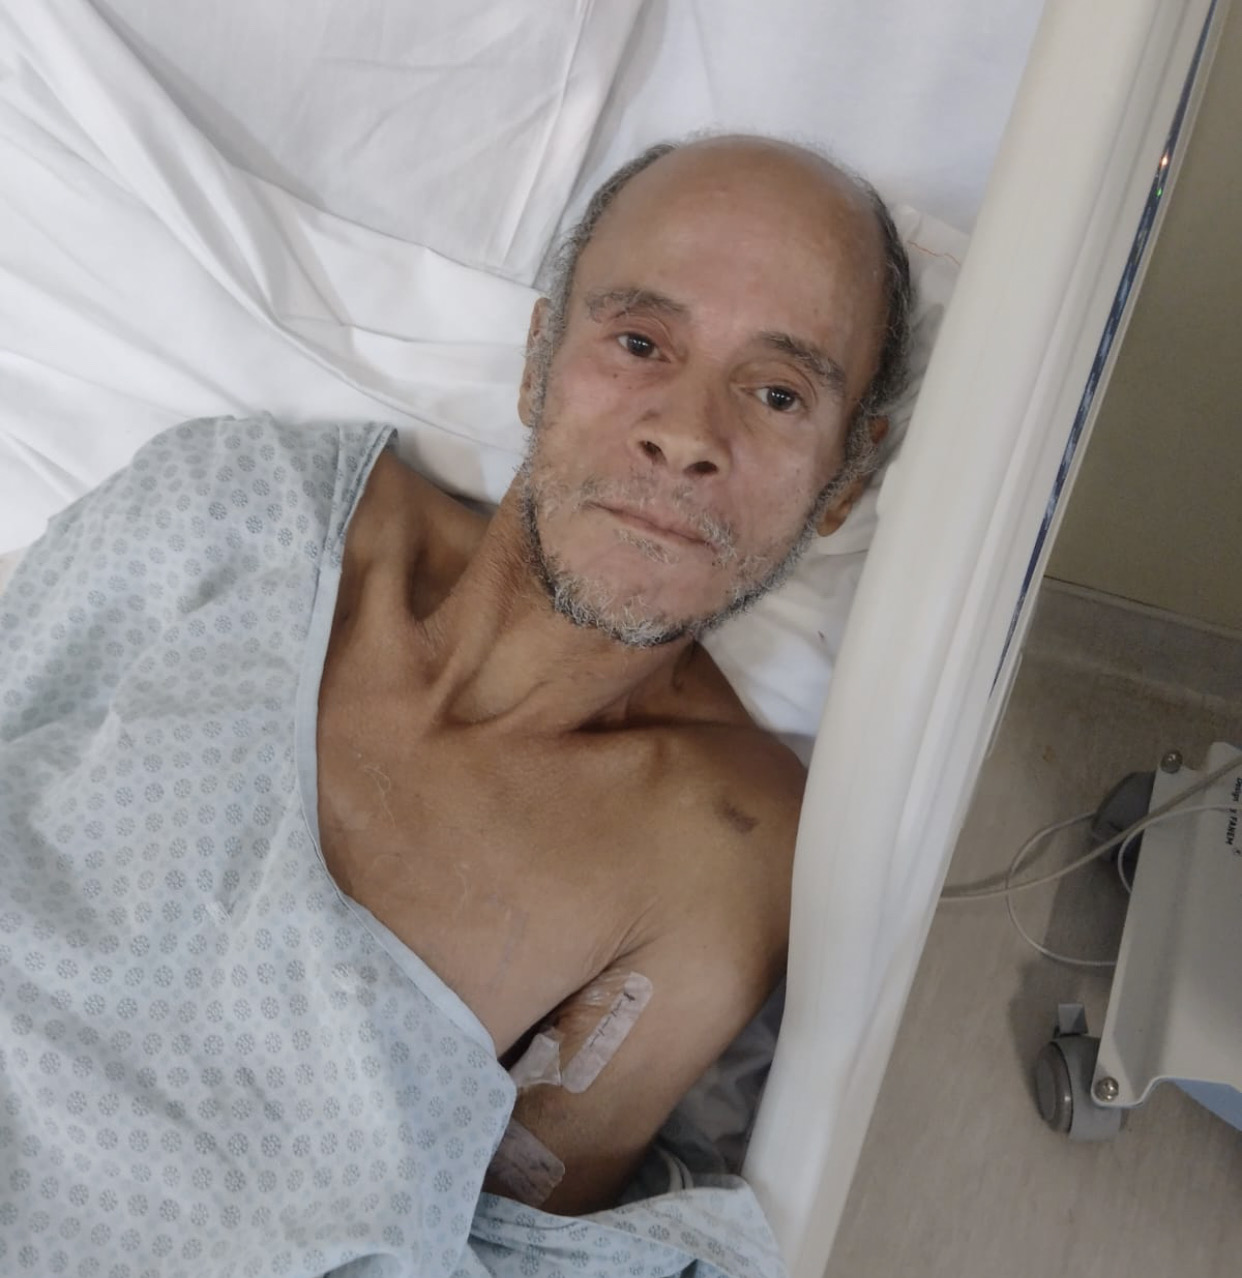 Paciente pardo e calvo, do sexo masculino, está deitado sobre uma maca hospitalar. Está usando avental do hospital.